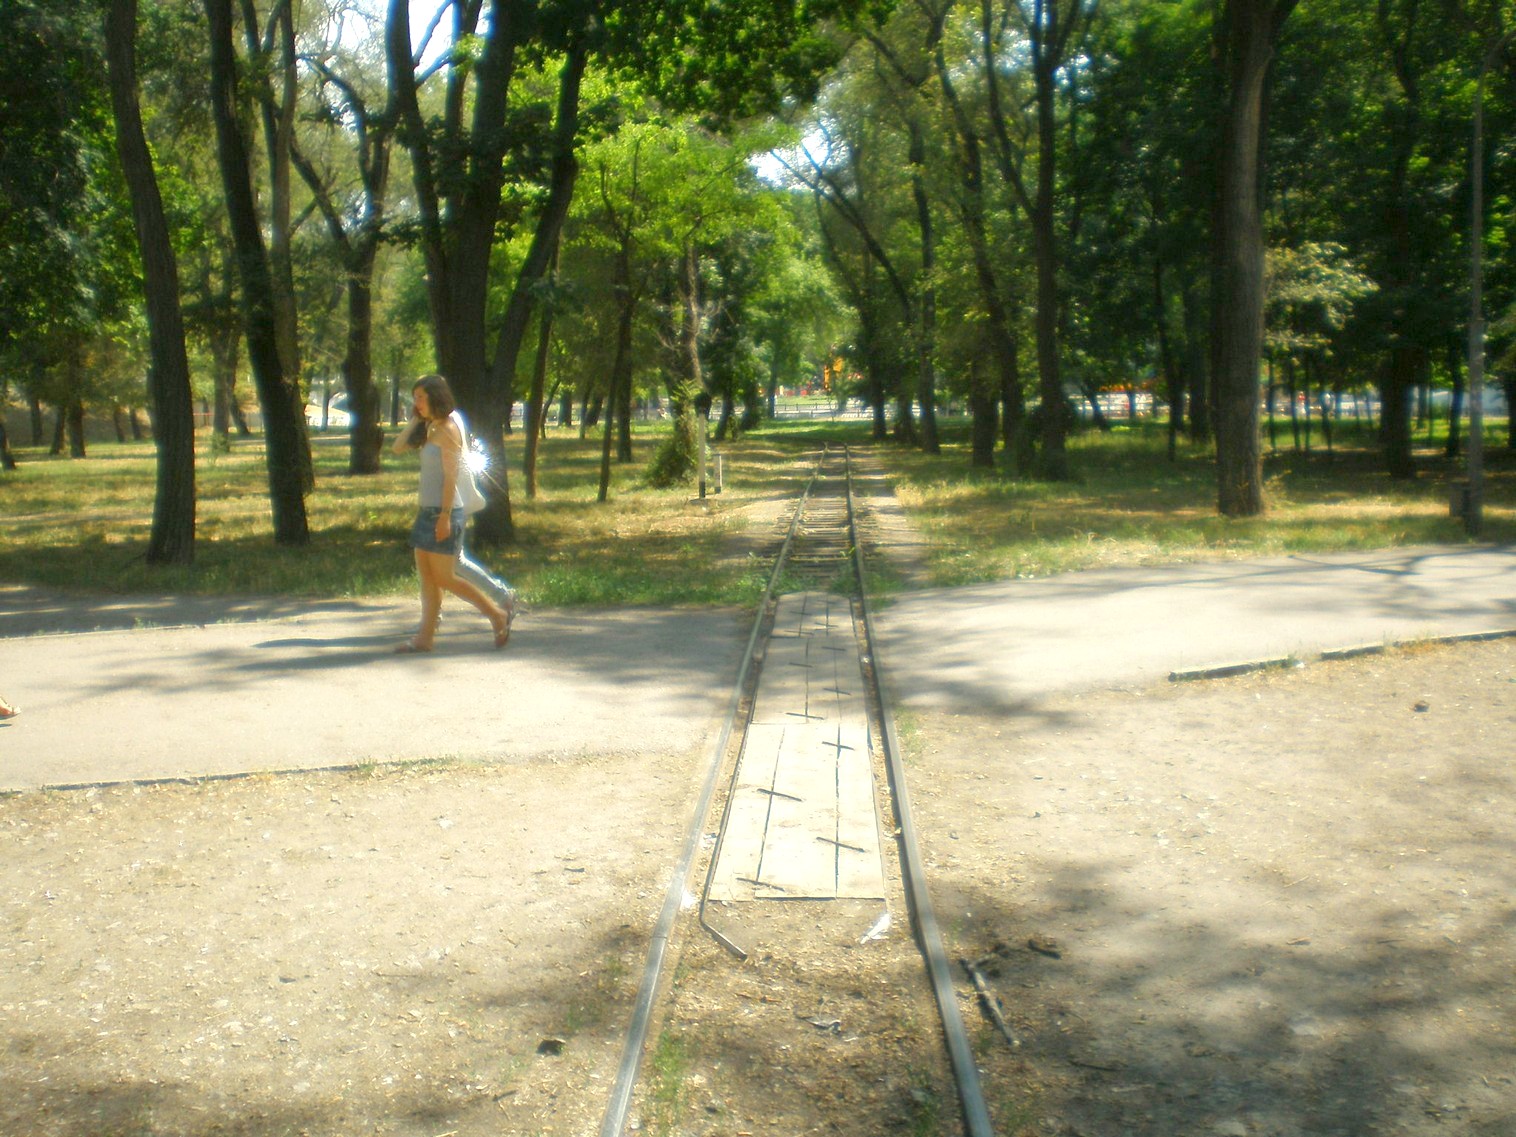 Малая Приднепровская (Днепропетровская) детская железная дорога  —  фотографии, сделанные в 2009 году (часть 6)